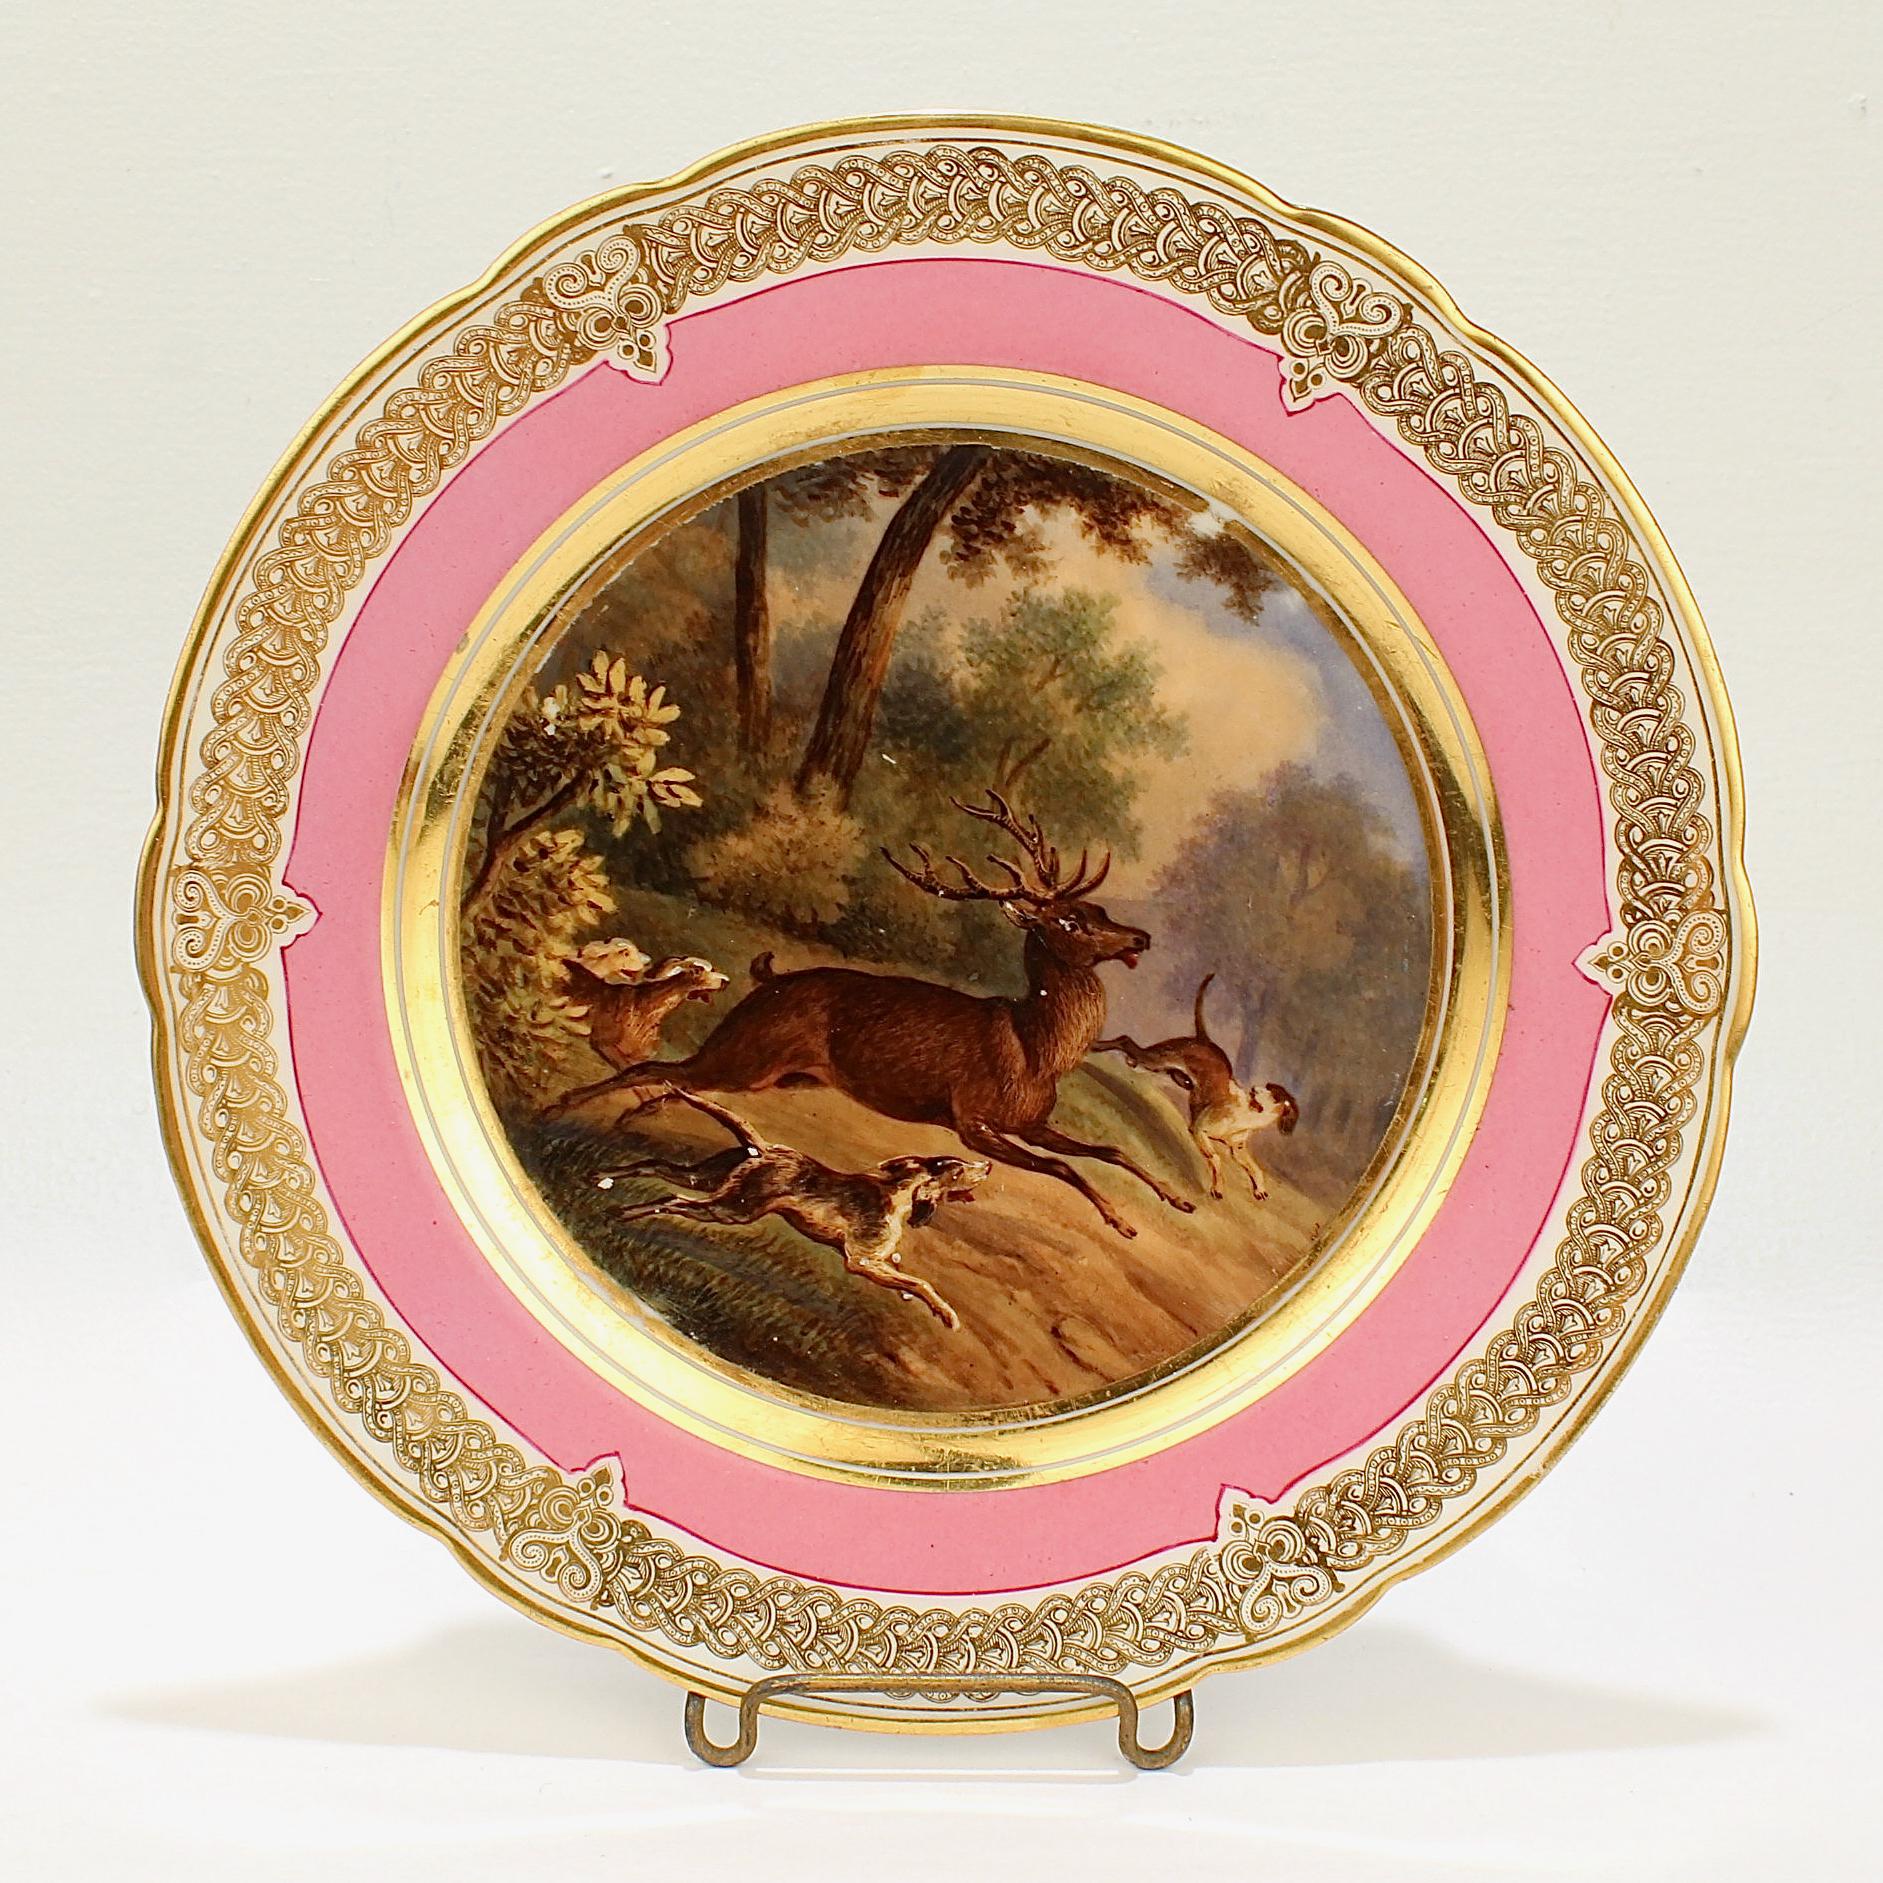 Ein wunderbarer antiker Pariser Porzellanteller aus dem 19. Jahrhundert.

Mit einer handgemalten Jagdszene in einer bukolischen Landschaft einschließlich eines großen Bocks (Zehnender) und 3 Hunden, die ihn jagen. 

Es hat einen rosafarbenen